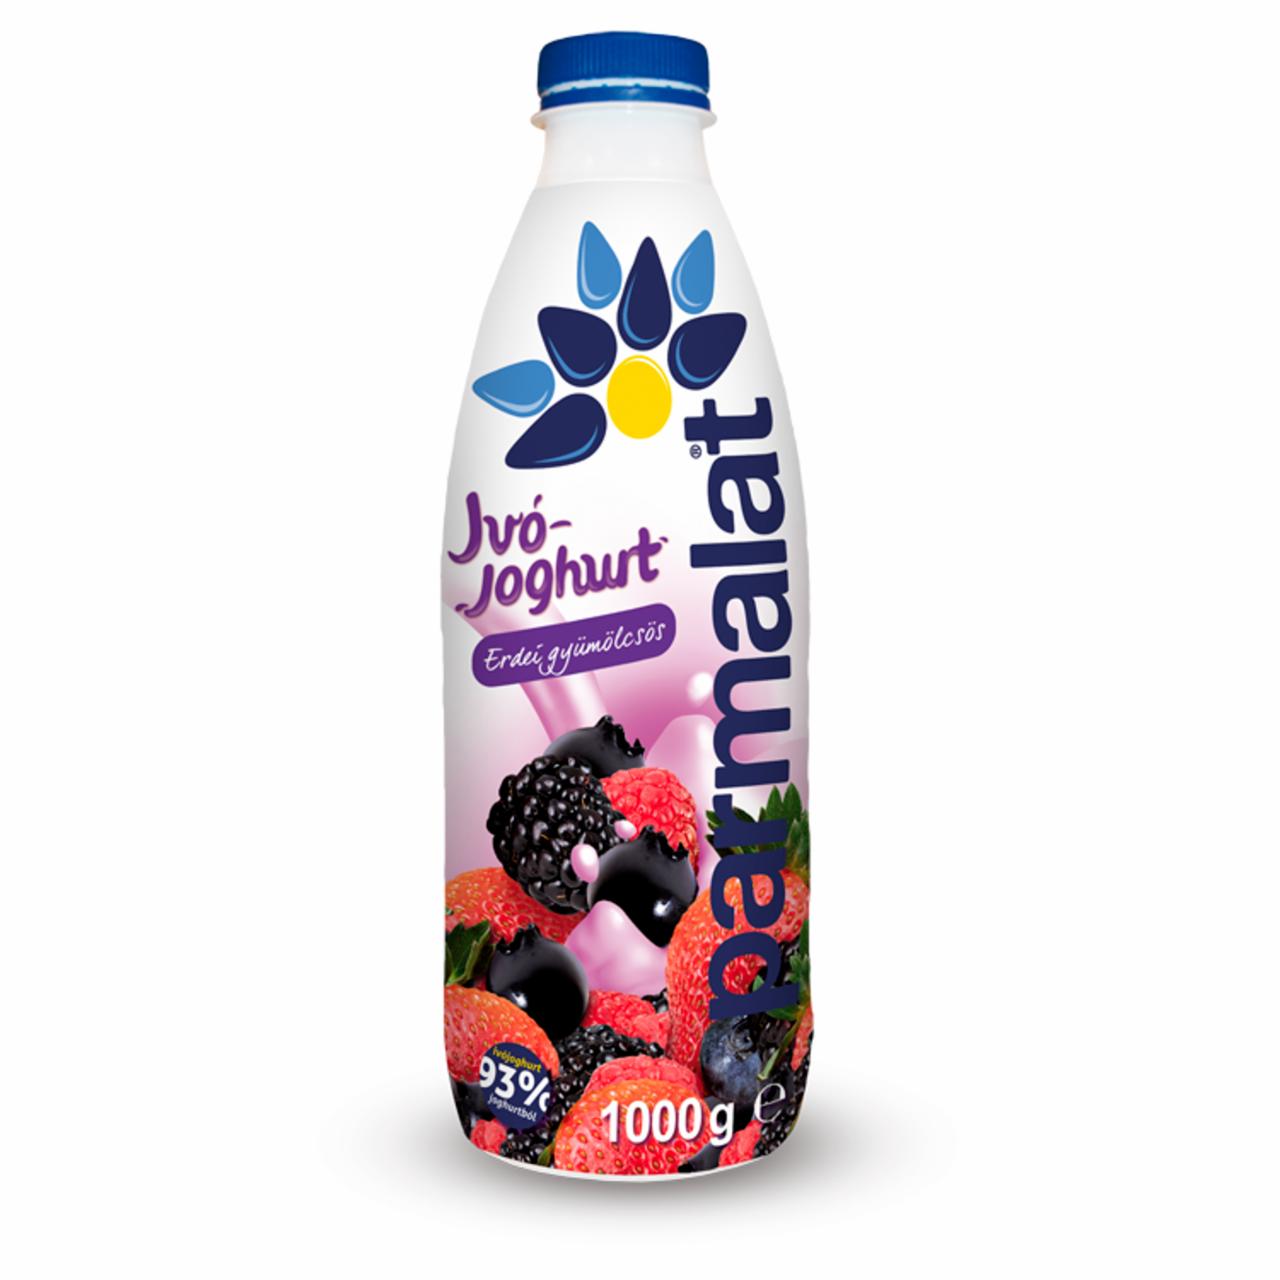 Képek - Parmalat zsírszegény erdei gyümölcsös ivójoghurt 1000 g